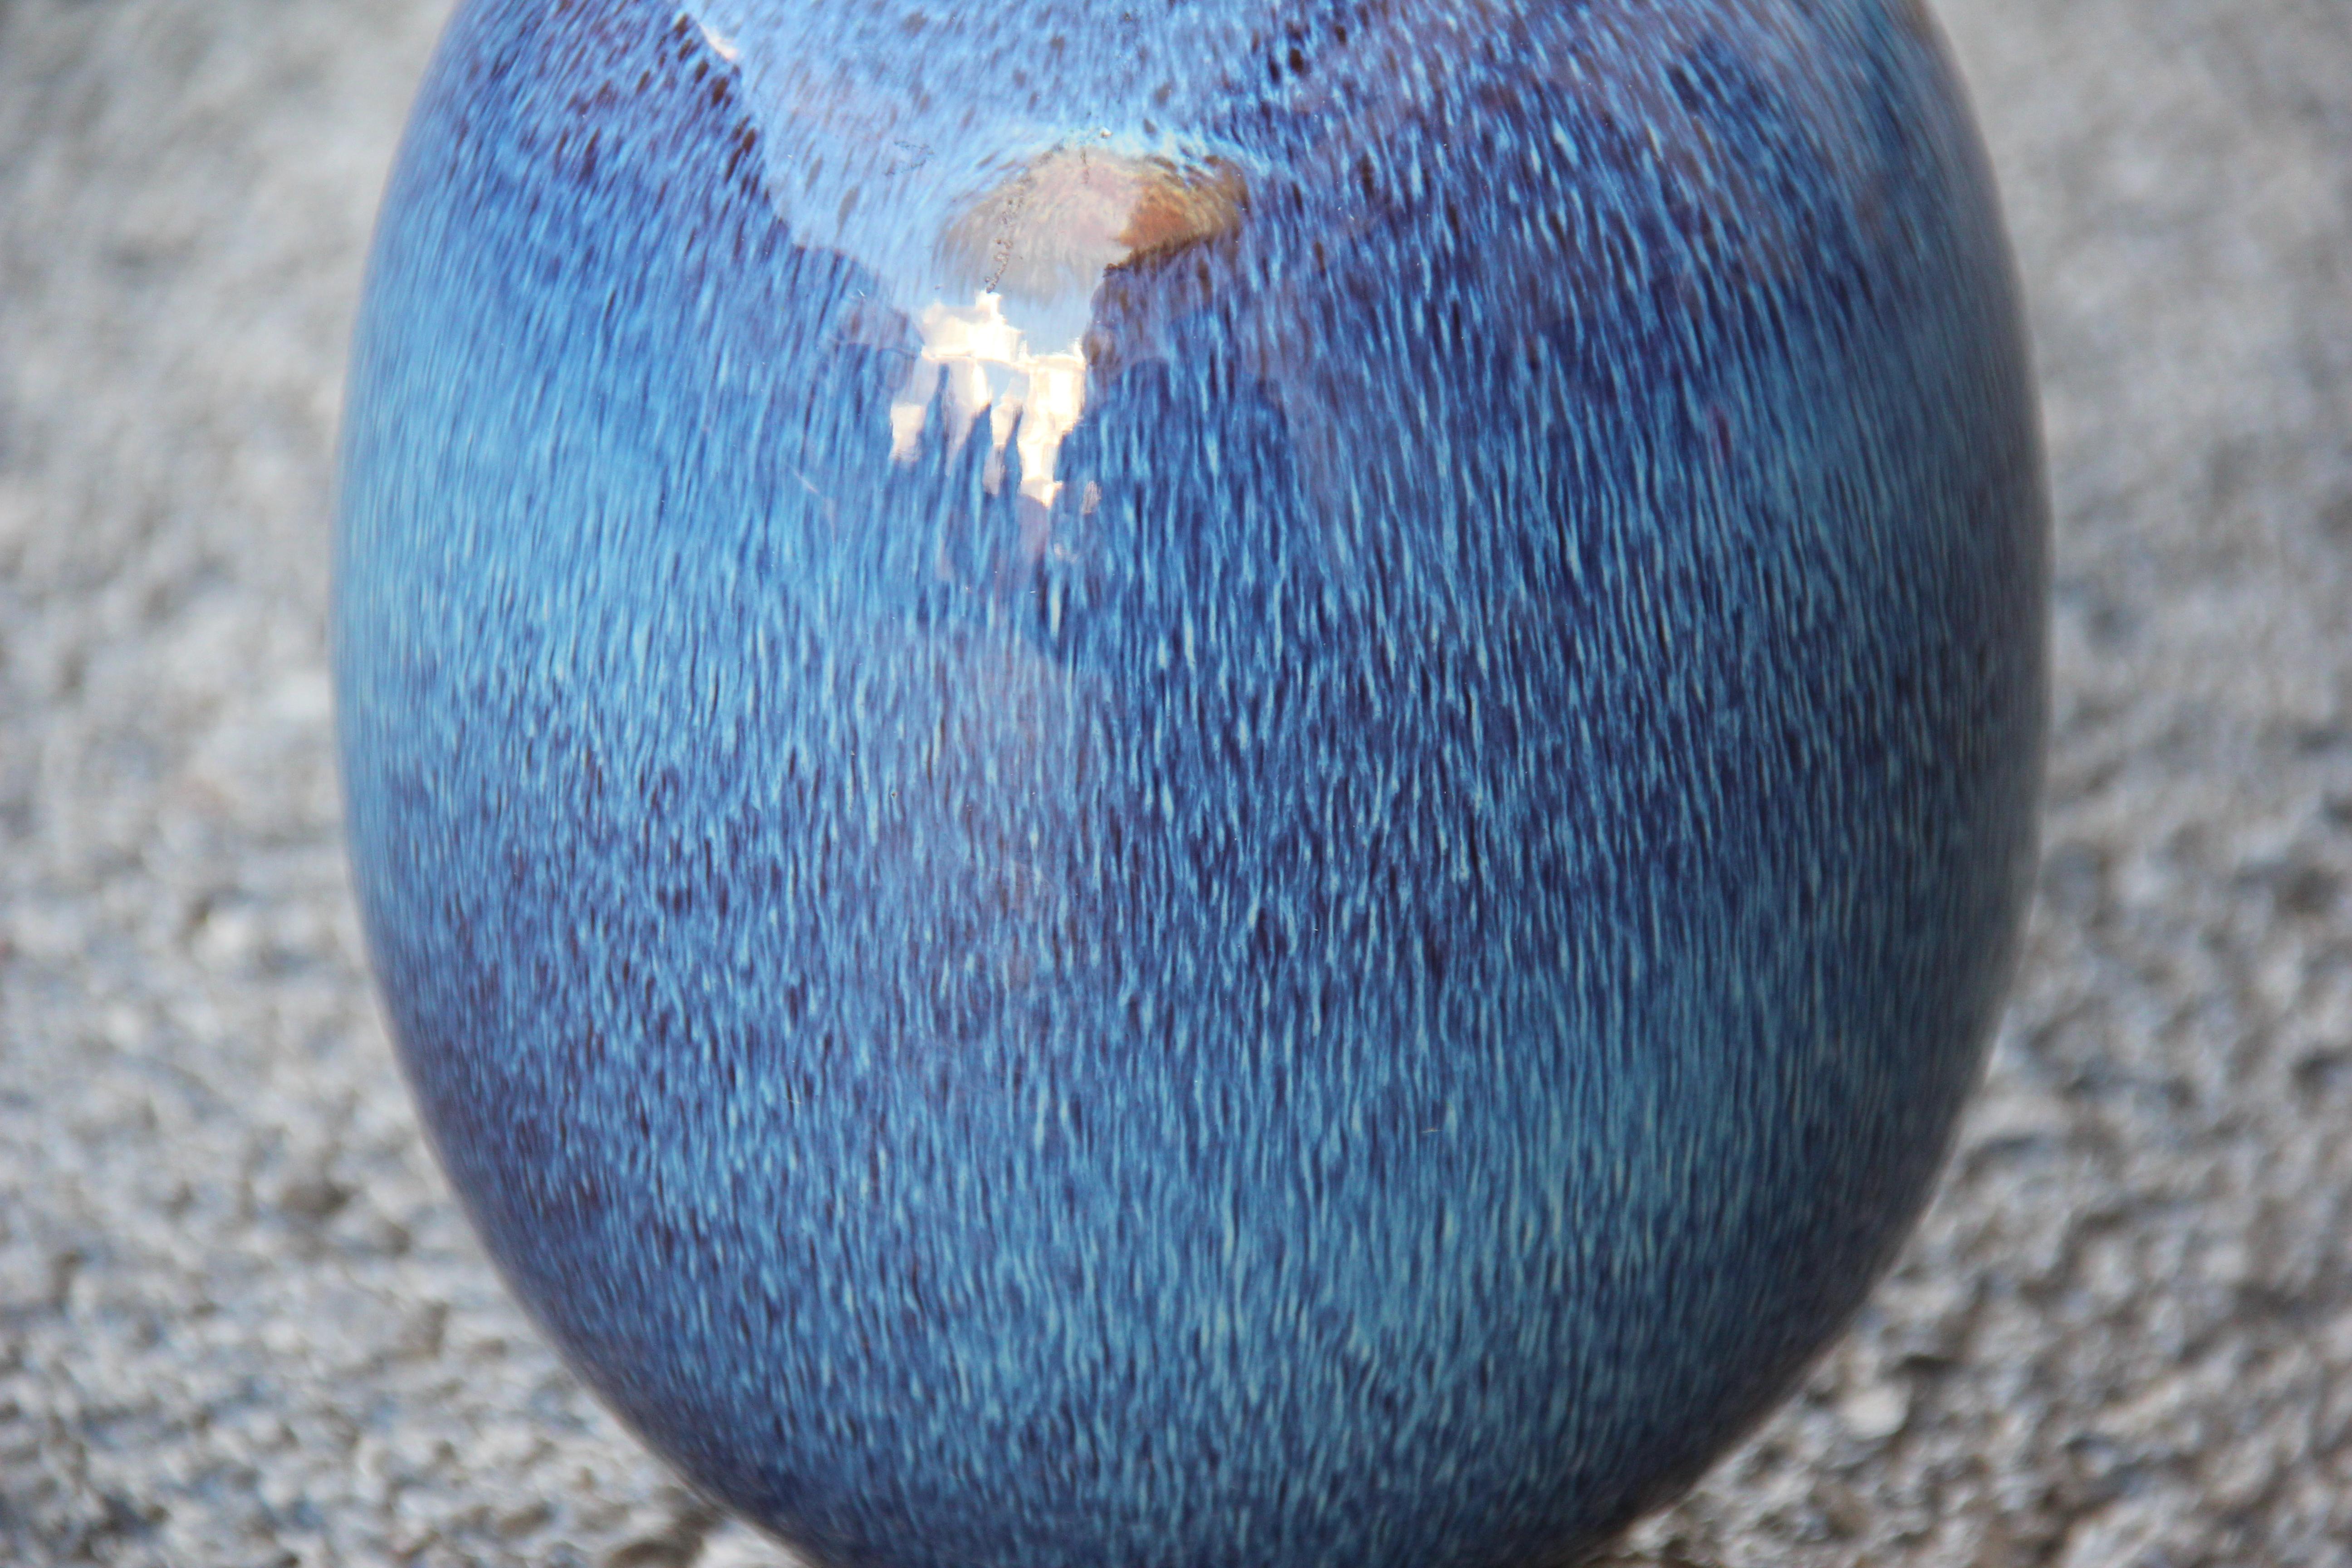 Round vase ceramic blue color Ernestine Italian design 1960s.